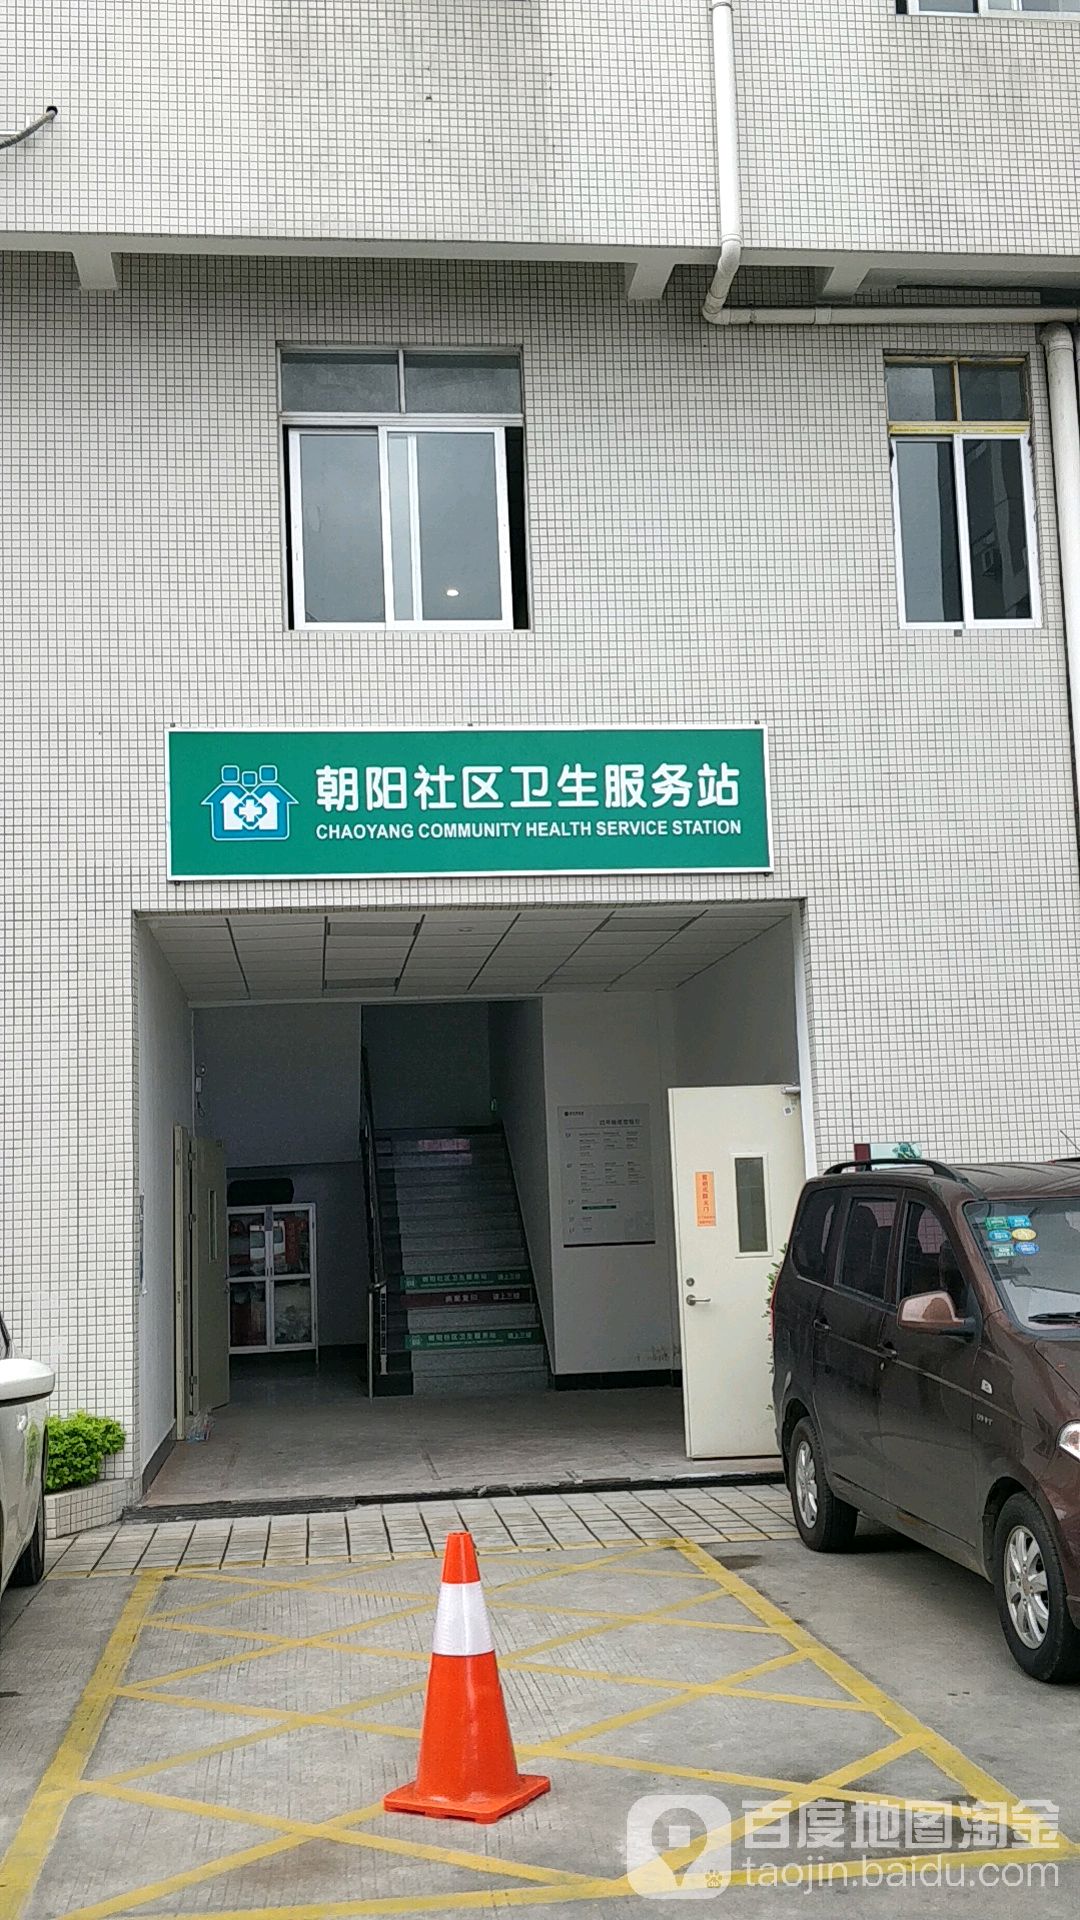 朝陽社區衛生服務站